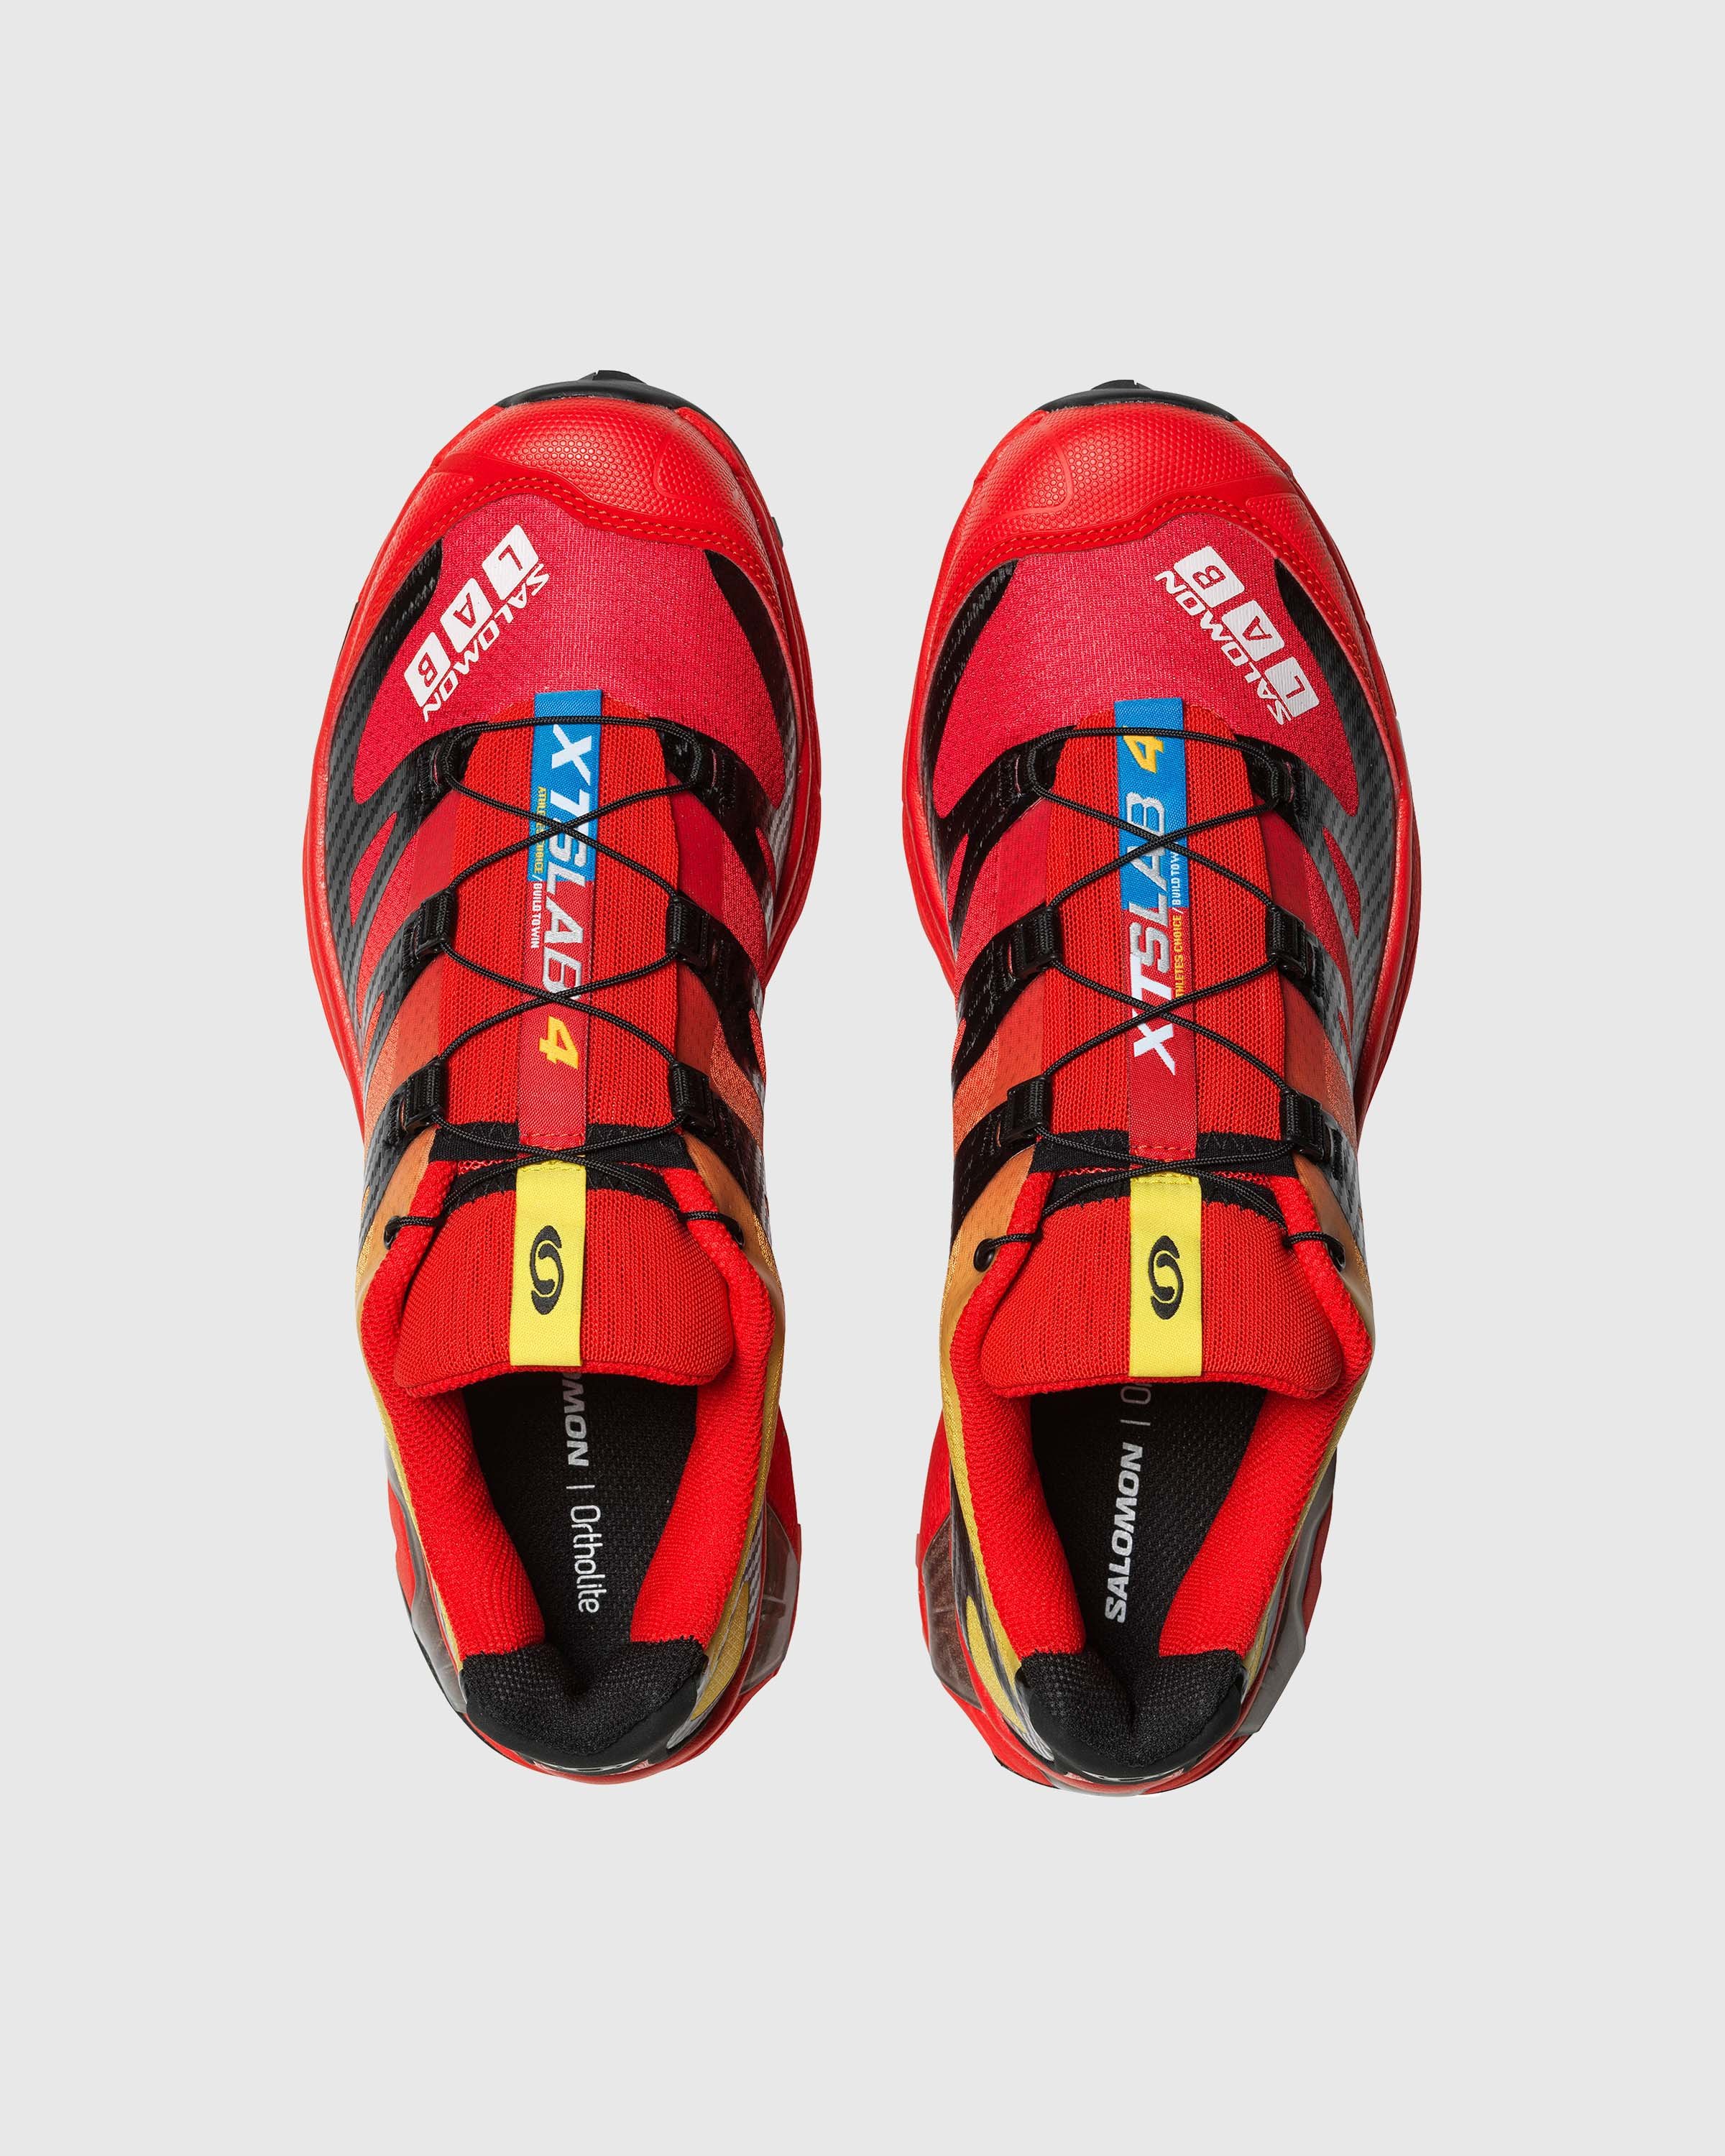 Salomon - XT-4 OG Fiery Red/Black/Yellow - Footwear - Red - Image 5